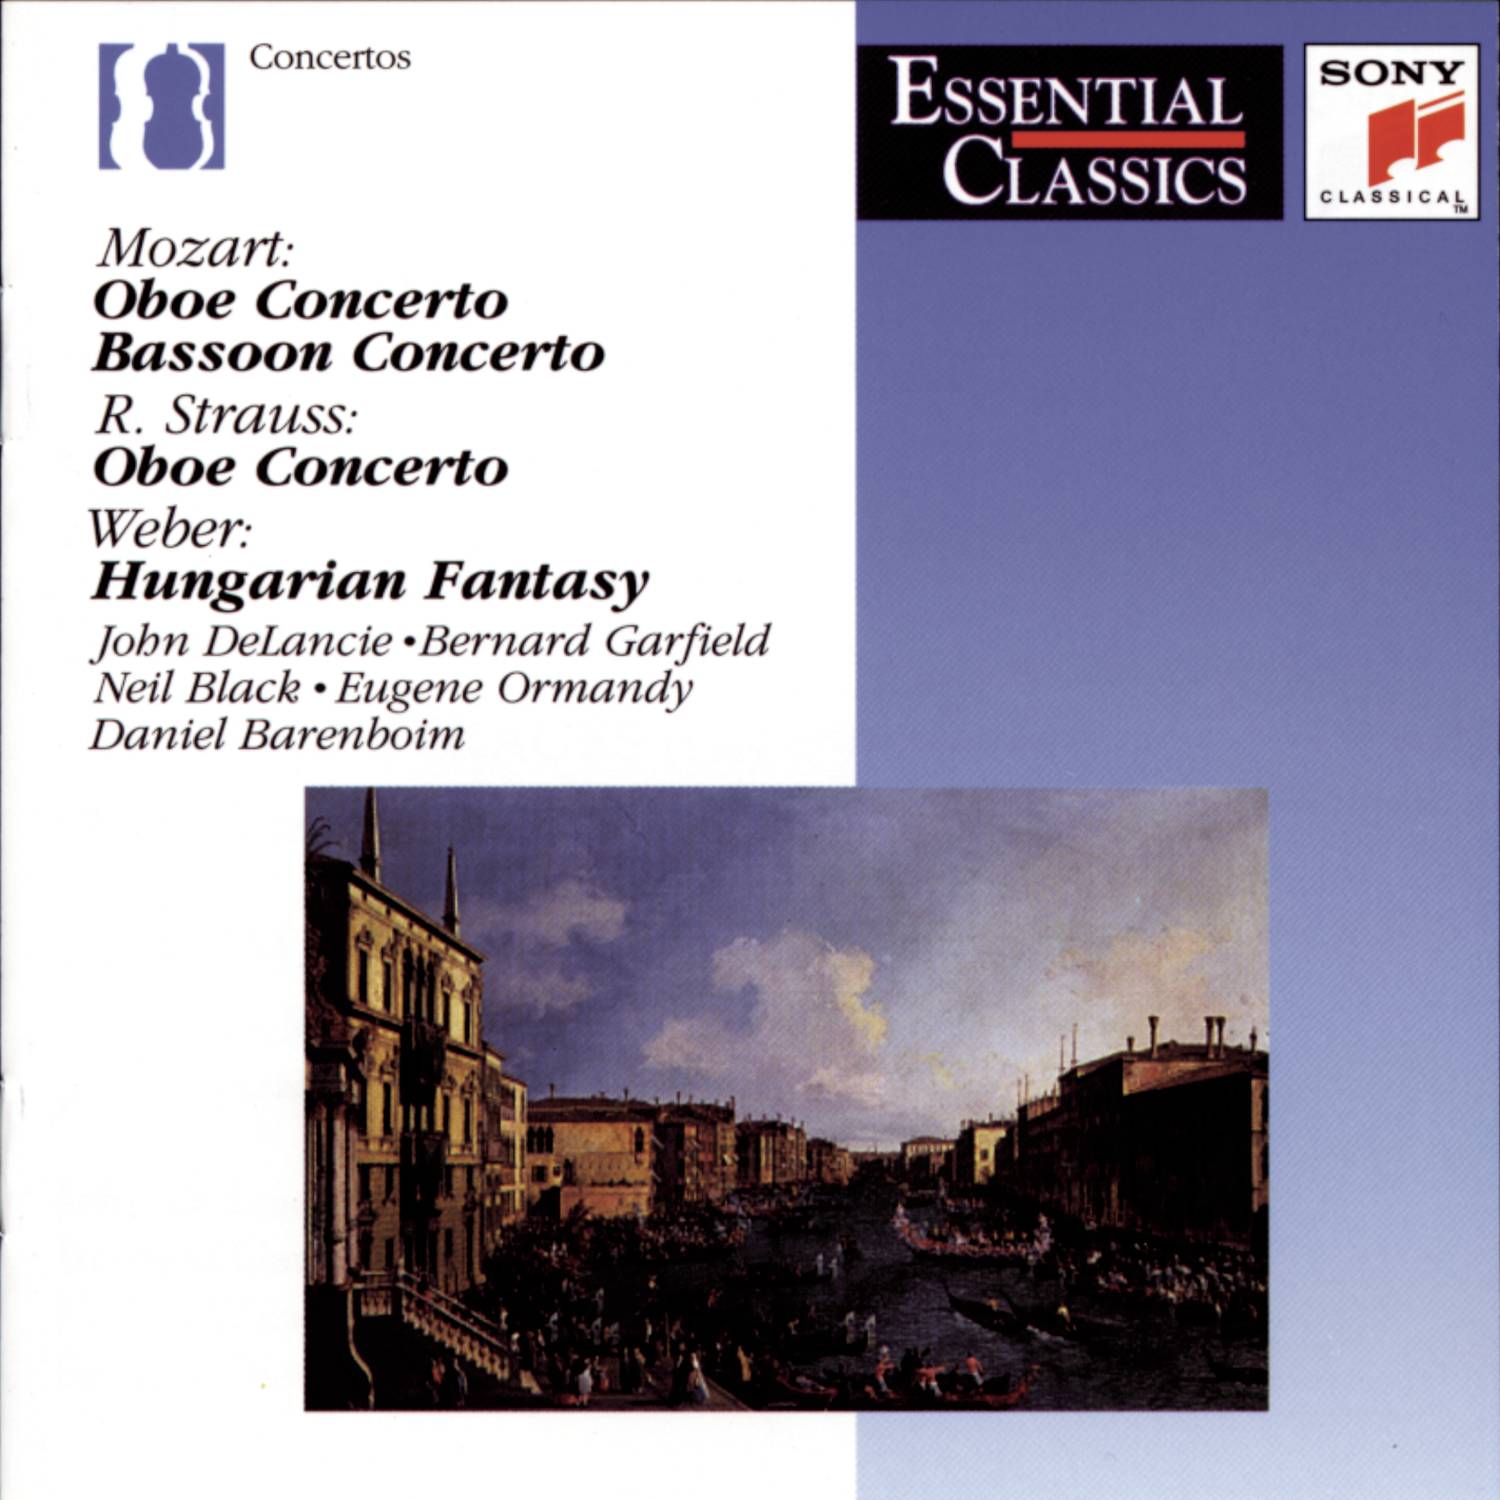 Concerto for Bassoon and Orchestra in B-flat Major, K.191 (186e): III. Rondo. Tempo di Menuetto